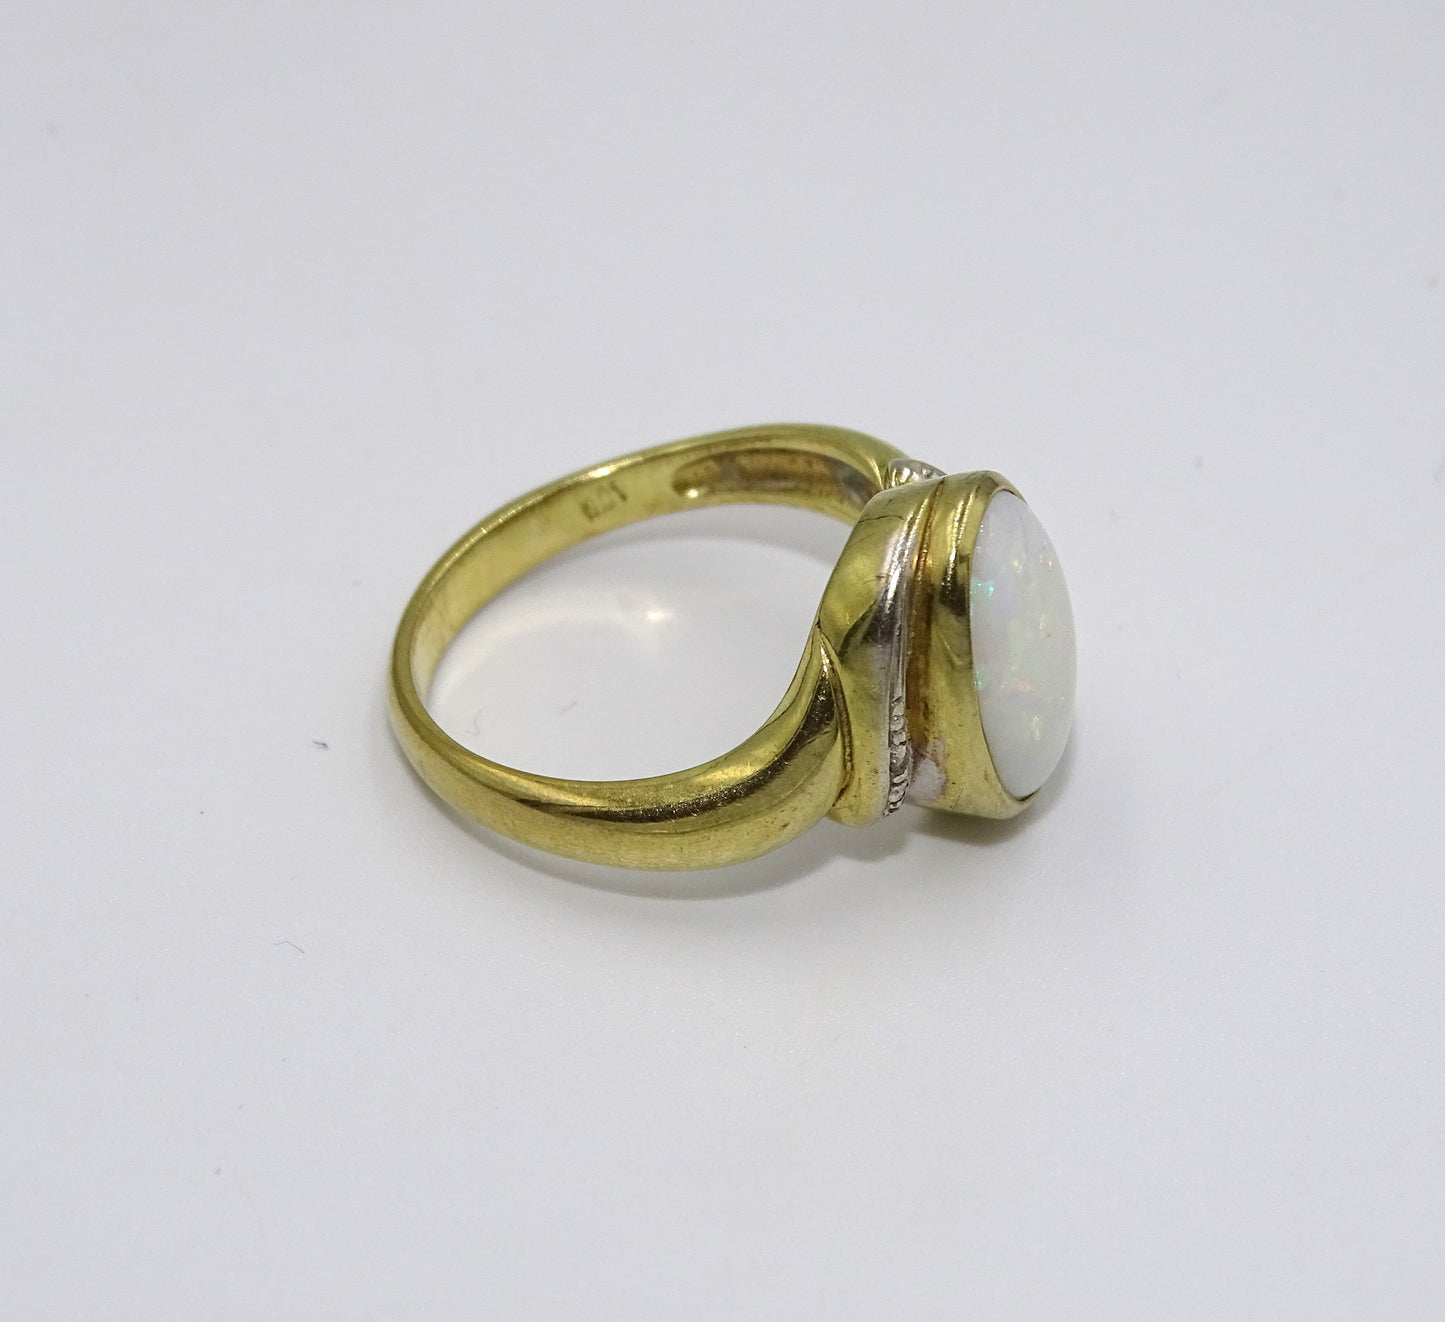 Ovaler Weißer Opal Ring - 8k 333 Gelbgold - Größe 55